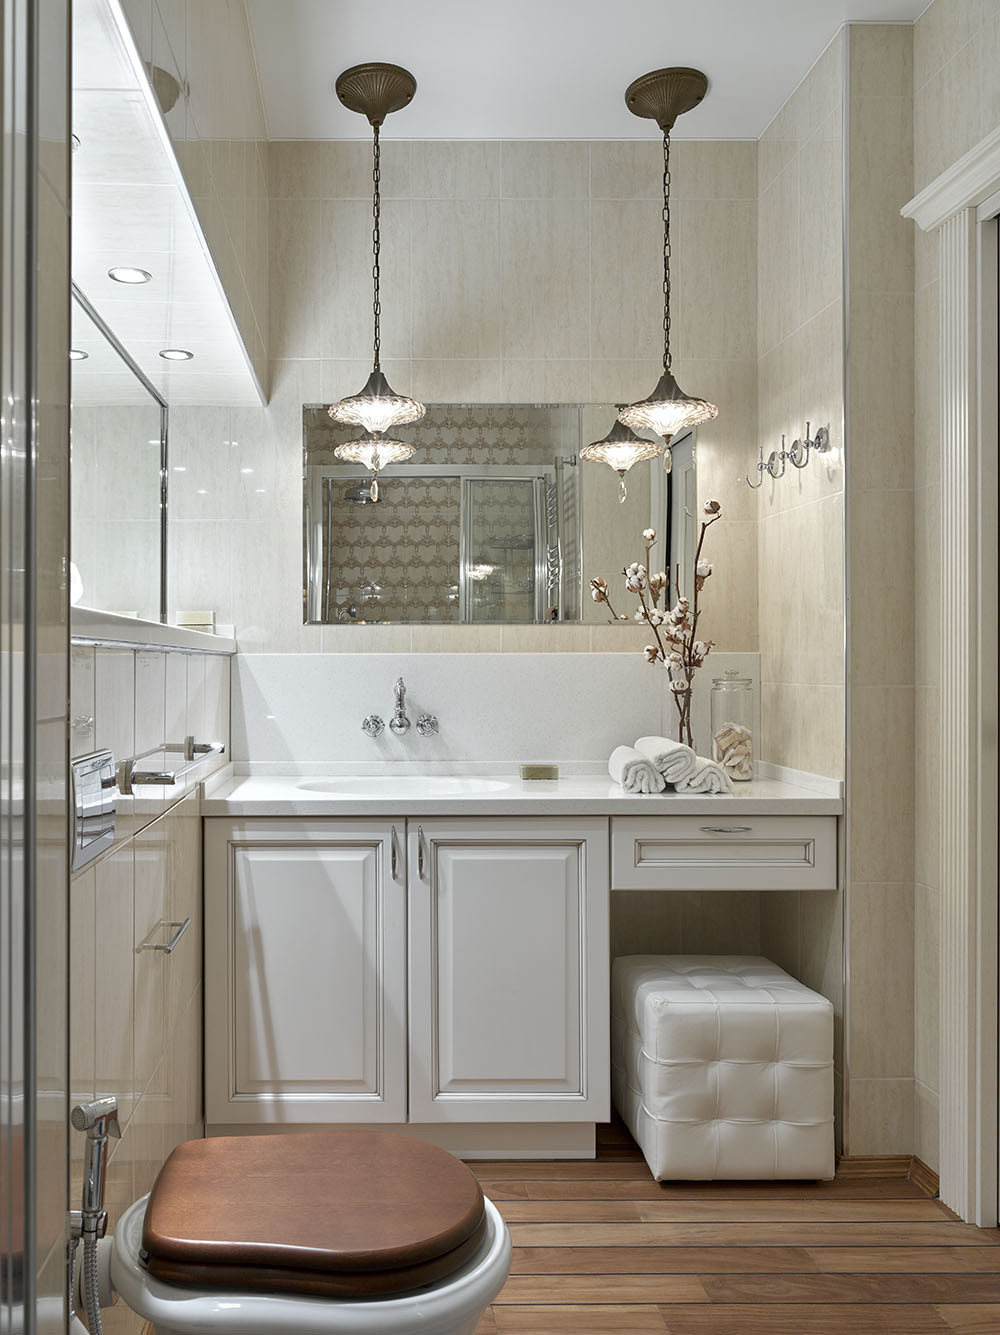 Khu vực phòng tắm cũng được đầu tư như một spa sang trọng dành cho quý bà với đèn thả trần, tủ vanity tiện nghi, bồn toilet thiết kế với nắp gỗ màu trầm ấm.